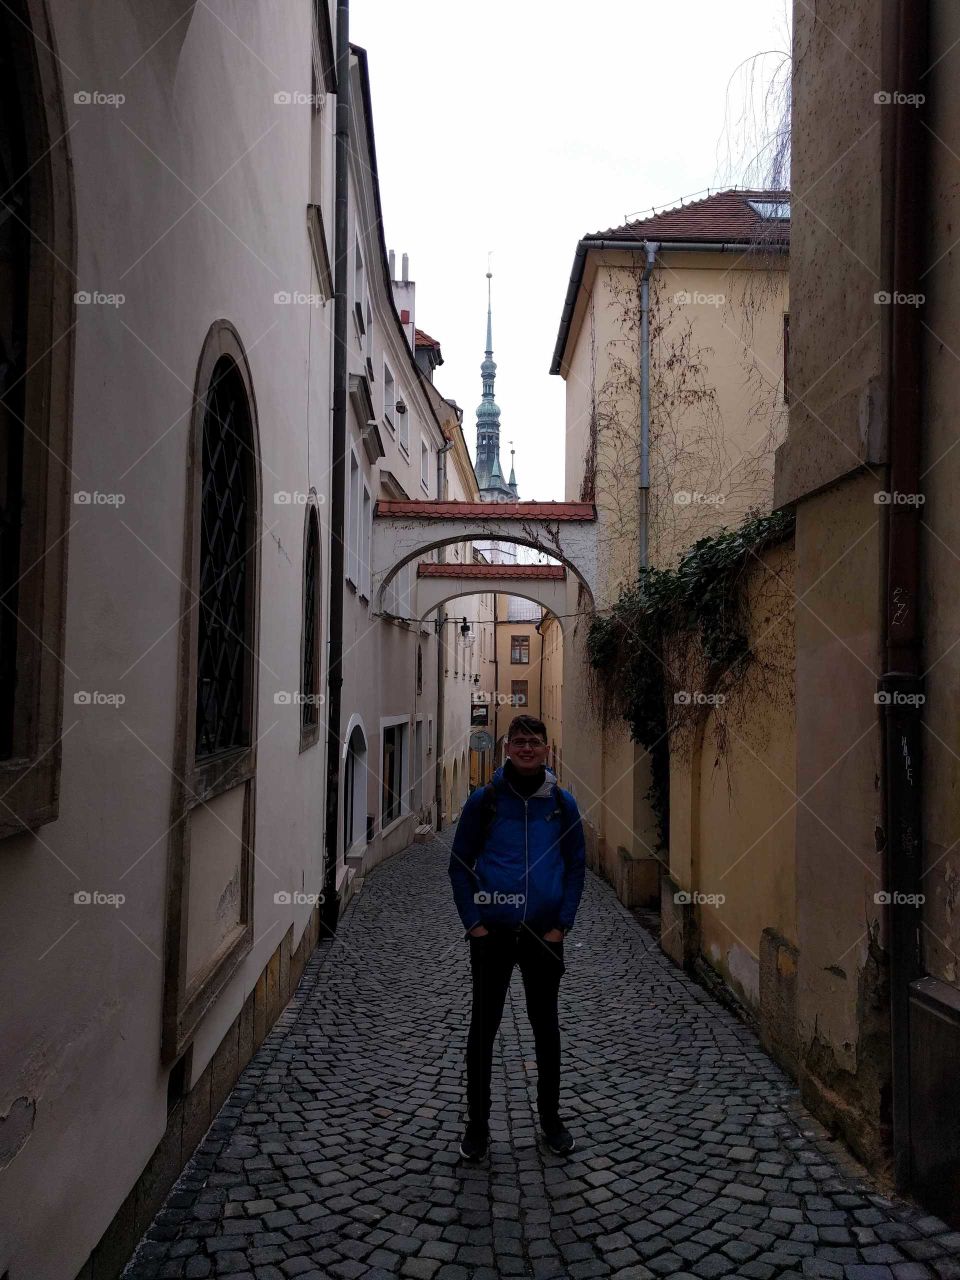 Olomouc, Czech republic